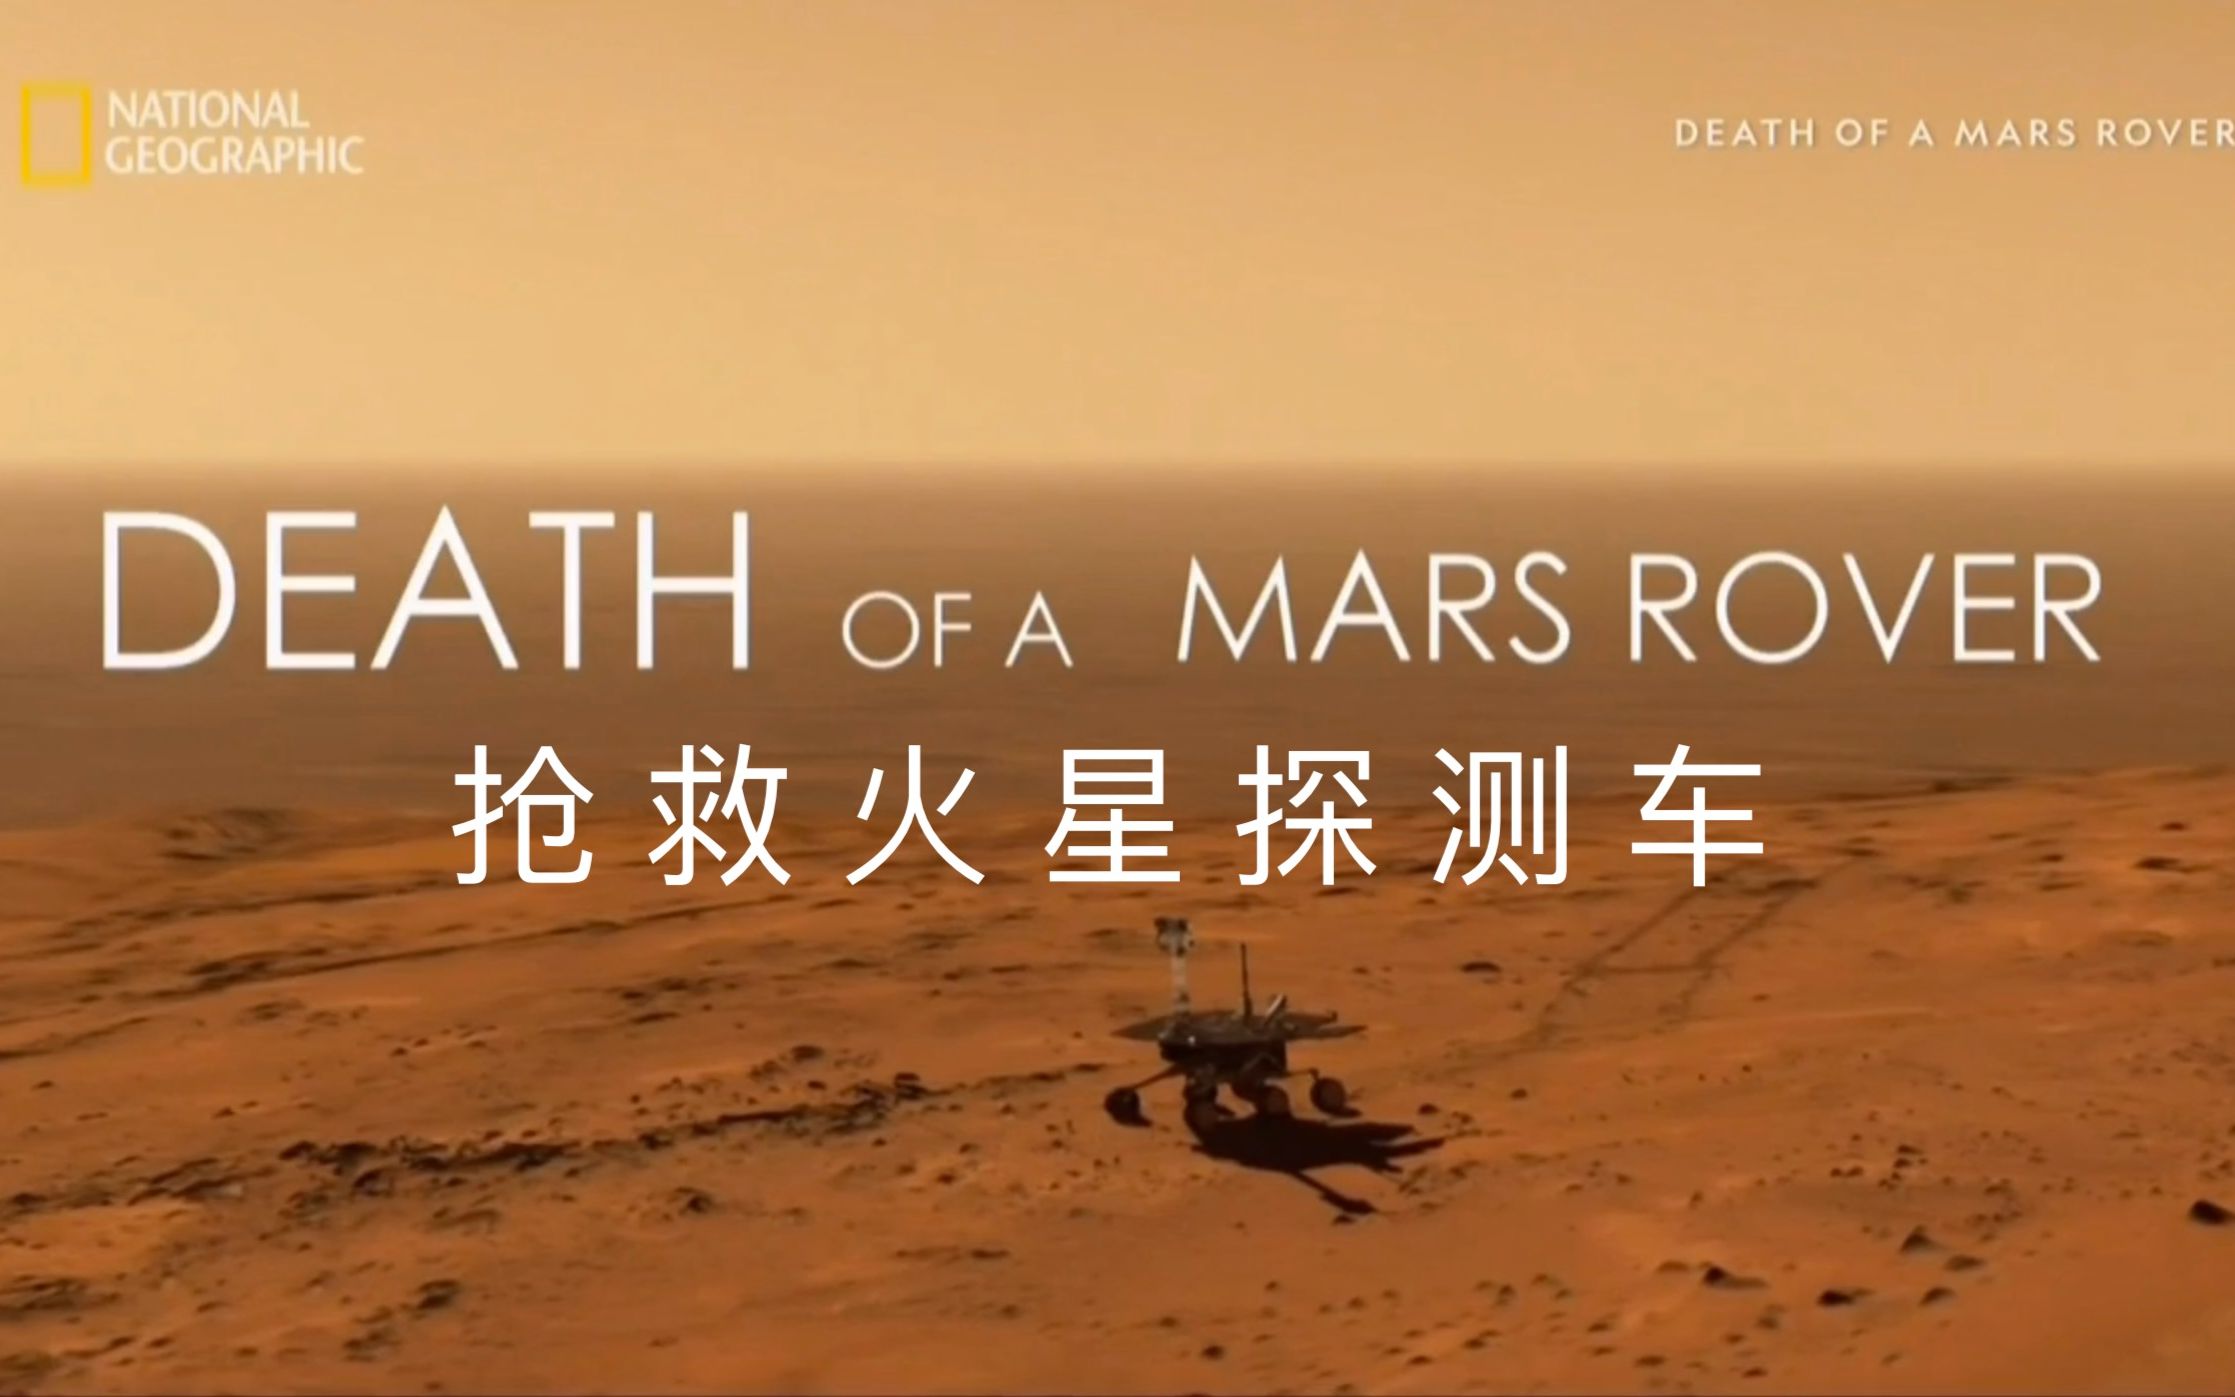 【国家地理频道】抢救火星探测车 Death Of A Mars Rover